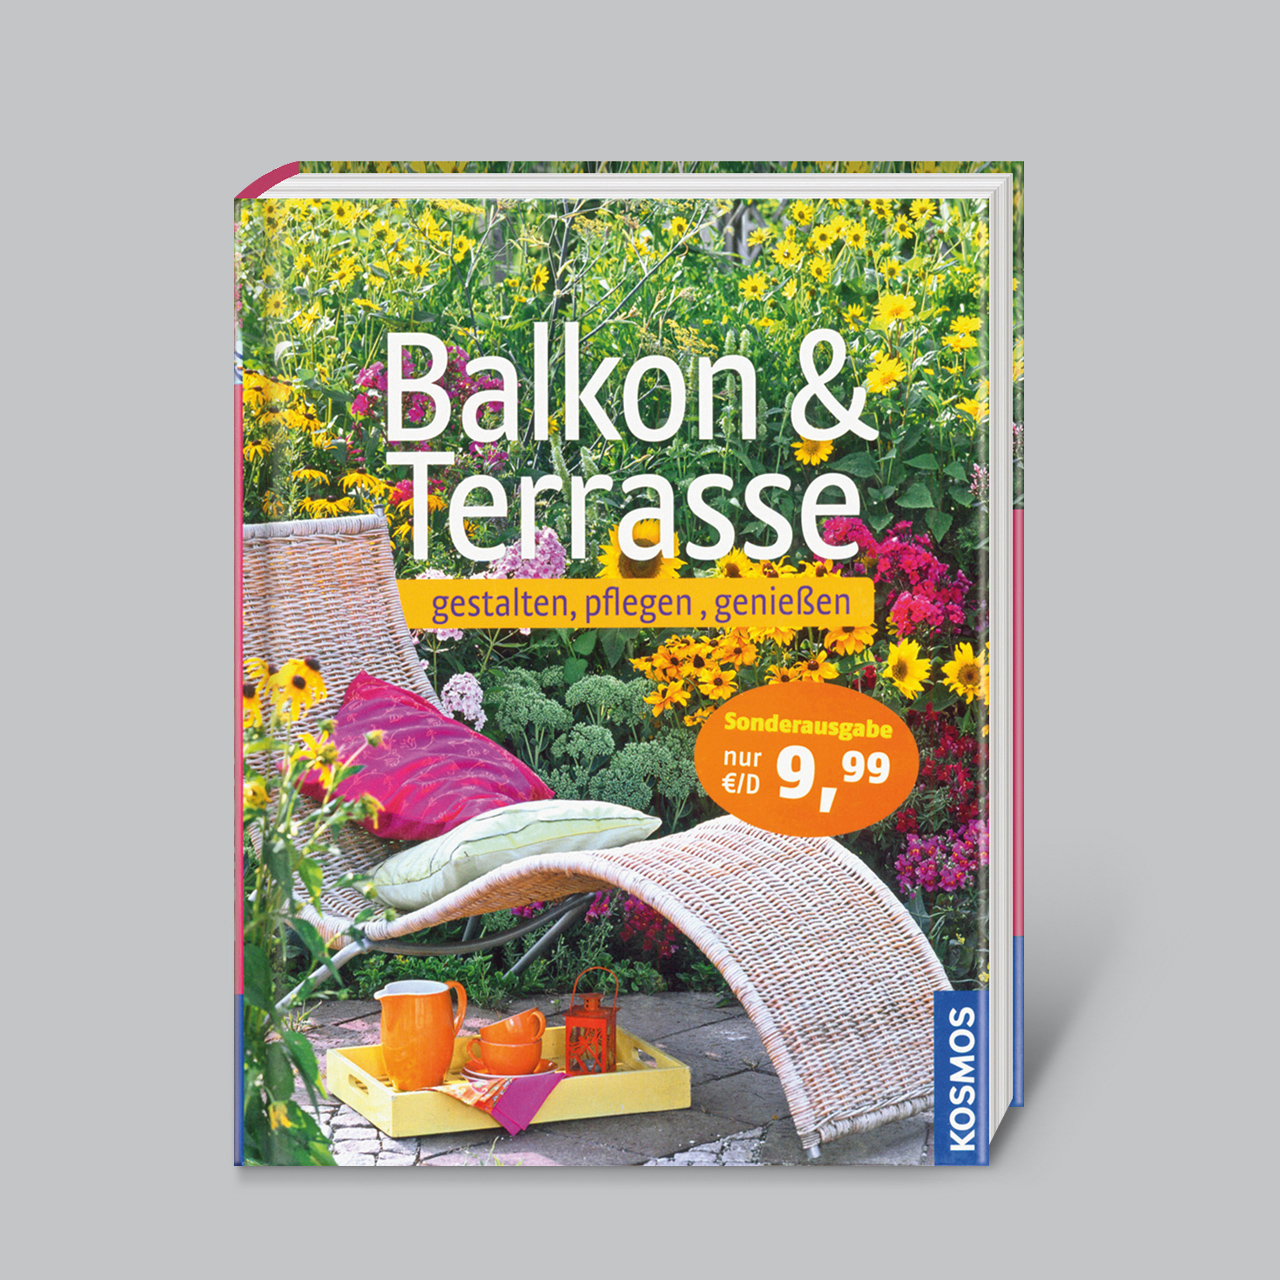 Terrasse Gestalten Pflanzen Frisch Balkon & Terrasse Gestalten Pflegen Genießen